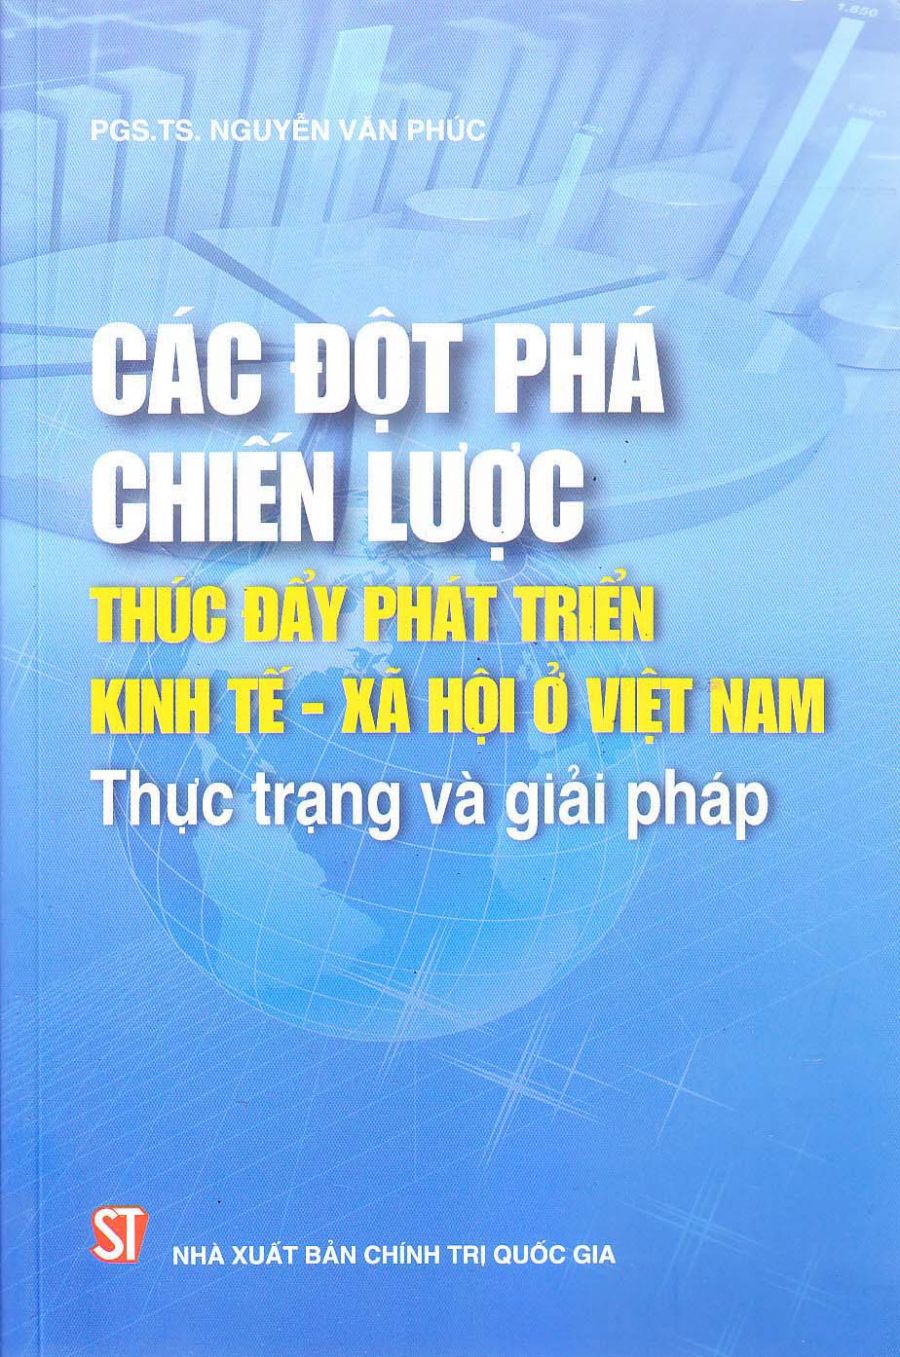 Các đột phá chiến lược thúc đẩy phát triển kinh tế - xã hội ở Việt Nam